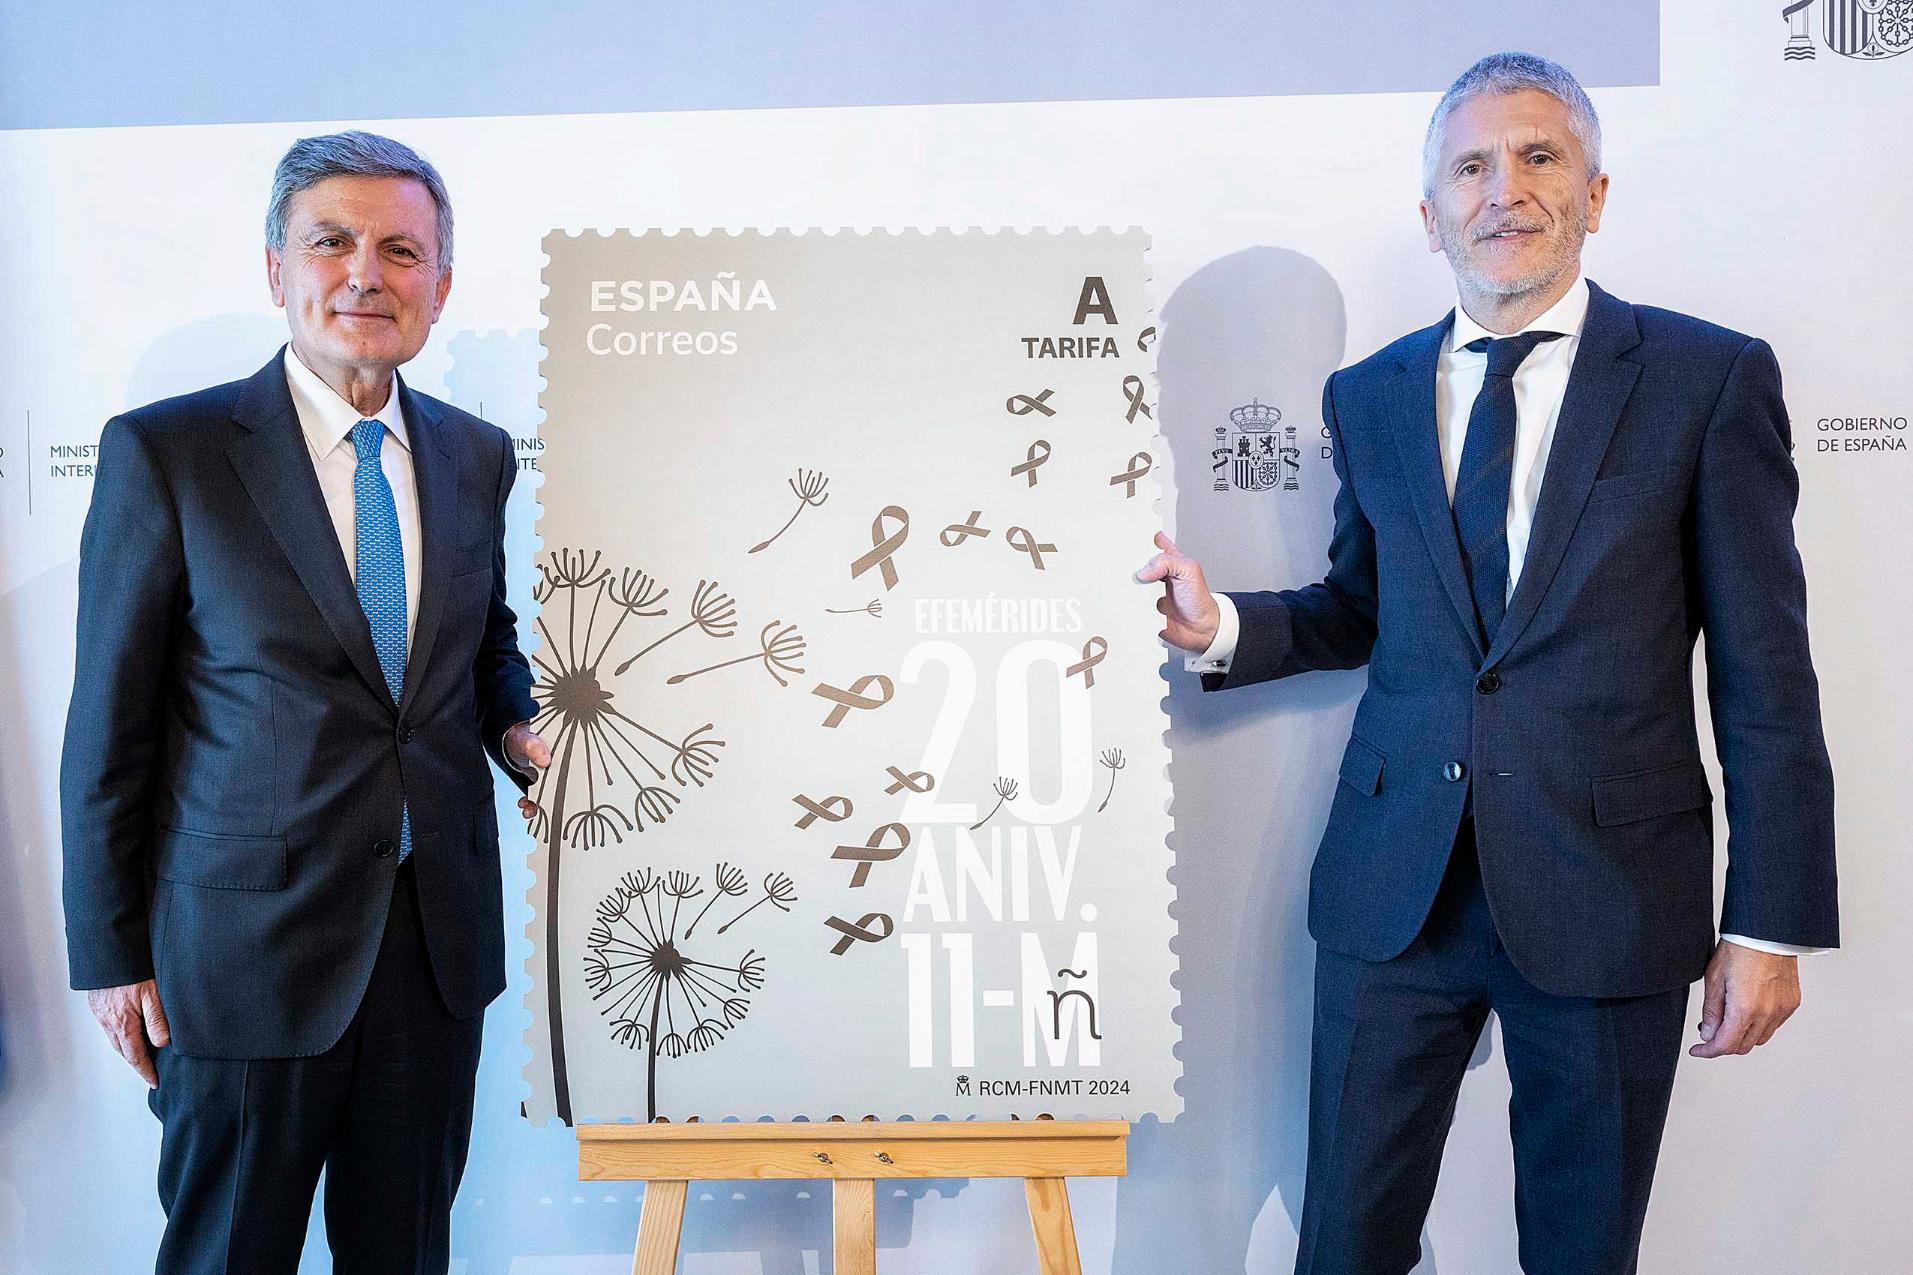 Grande-Marlaska agradece a Correos la emisión de un sello conmemorativo del vigésimo aniversario del 11M